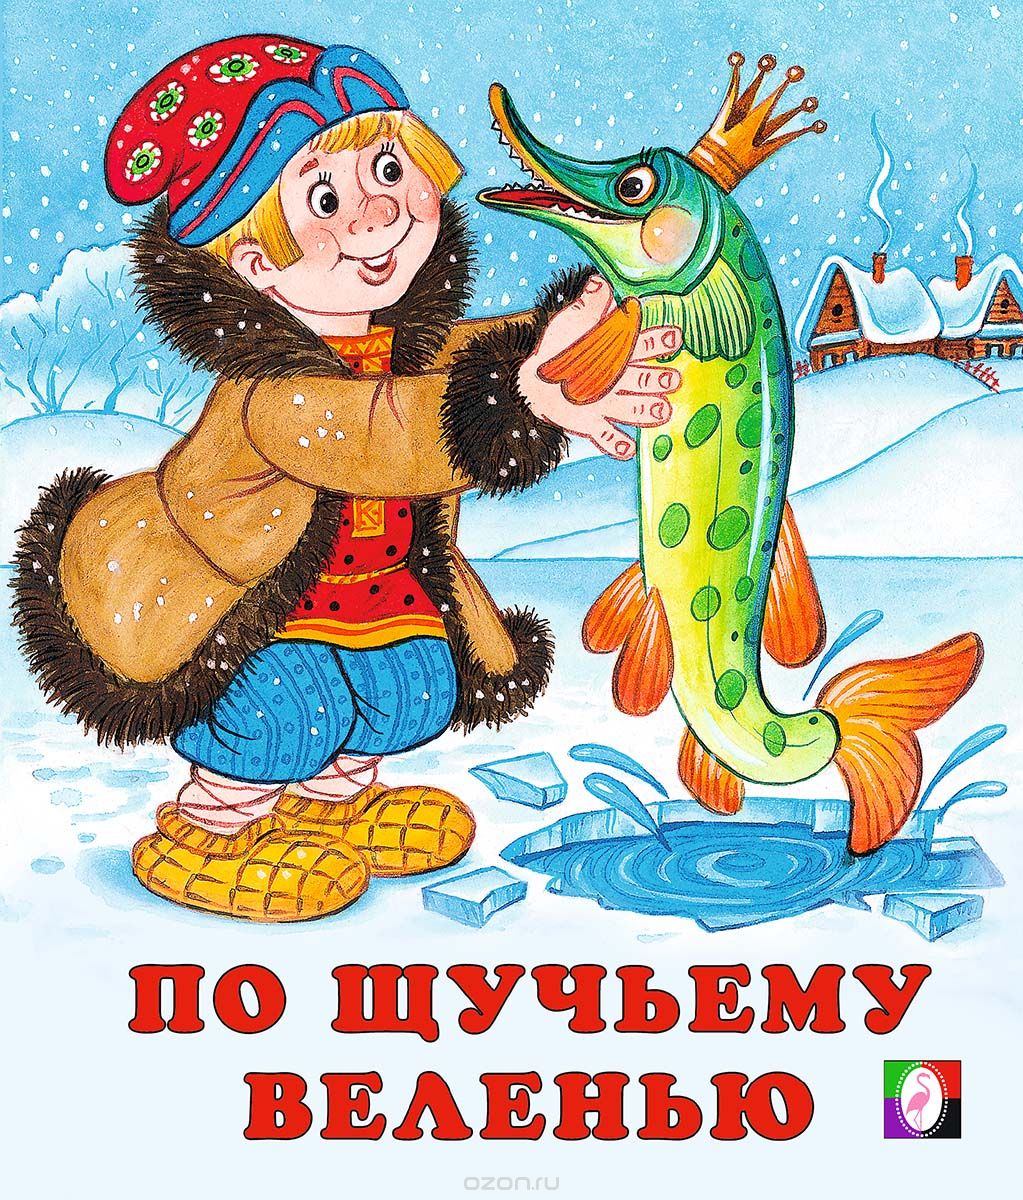 Сказки российские: Русские народные сказки - читать бесплатно онлайн